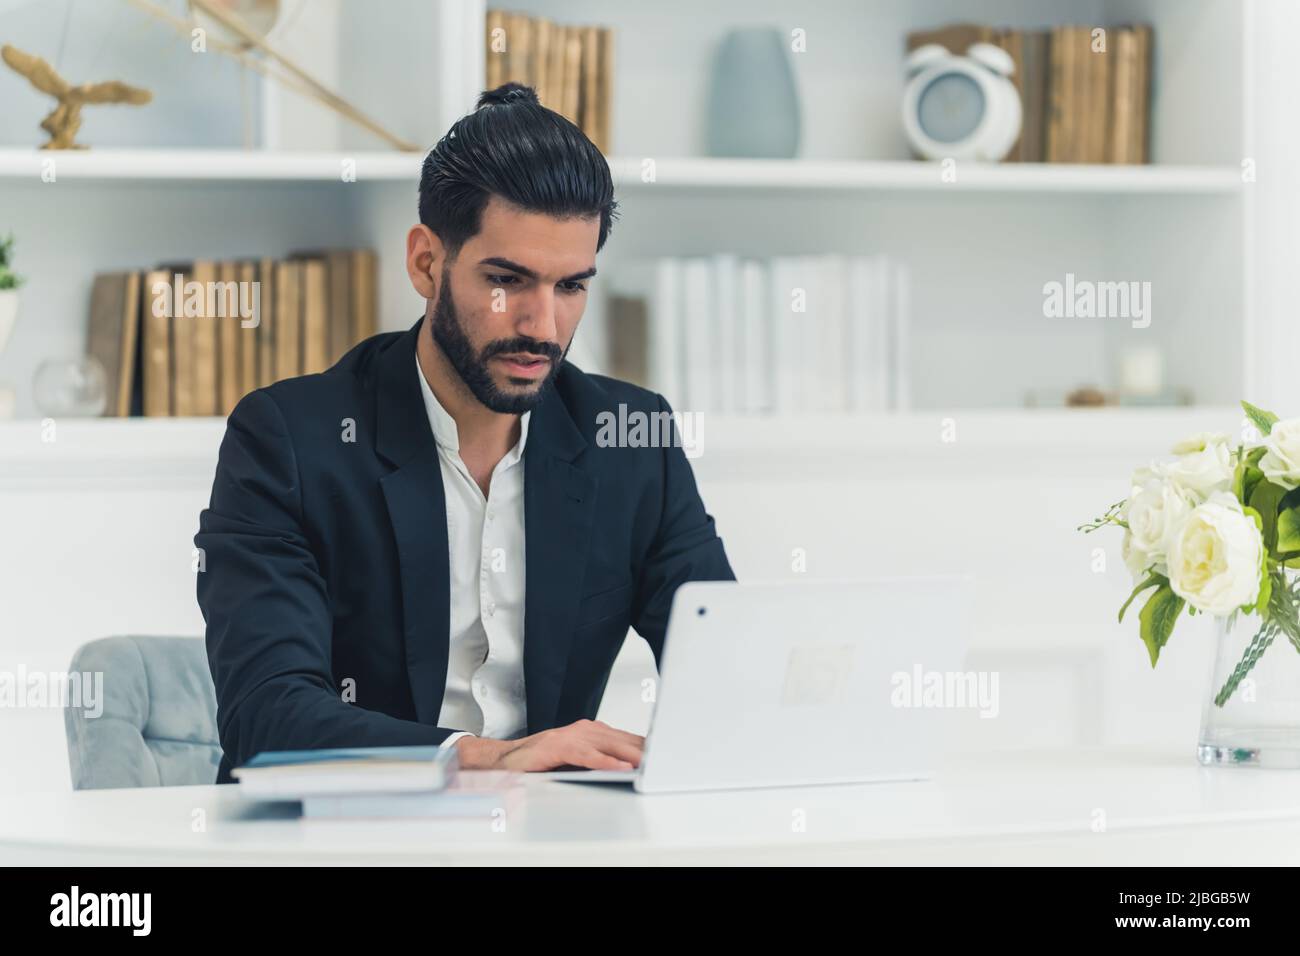 Photo en intérieur d'un jeune homme d'affaires cubain bien habillé, assis à un bureau, dactylographiant sur un ordinateur portable, en regardant focalisé. Photo de haute qualité Banque D'Images